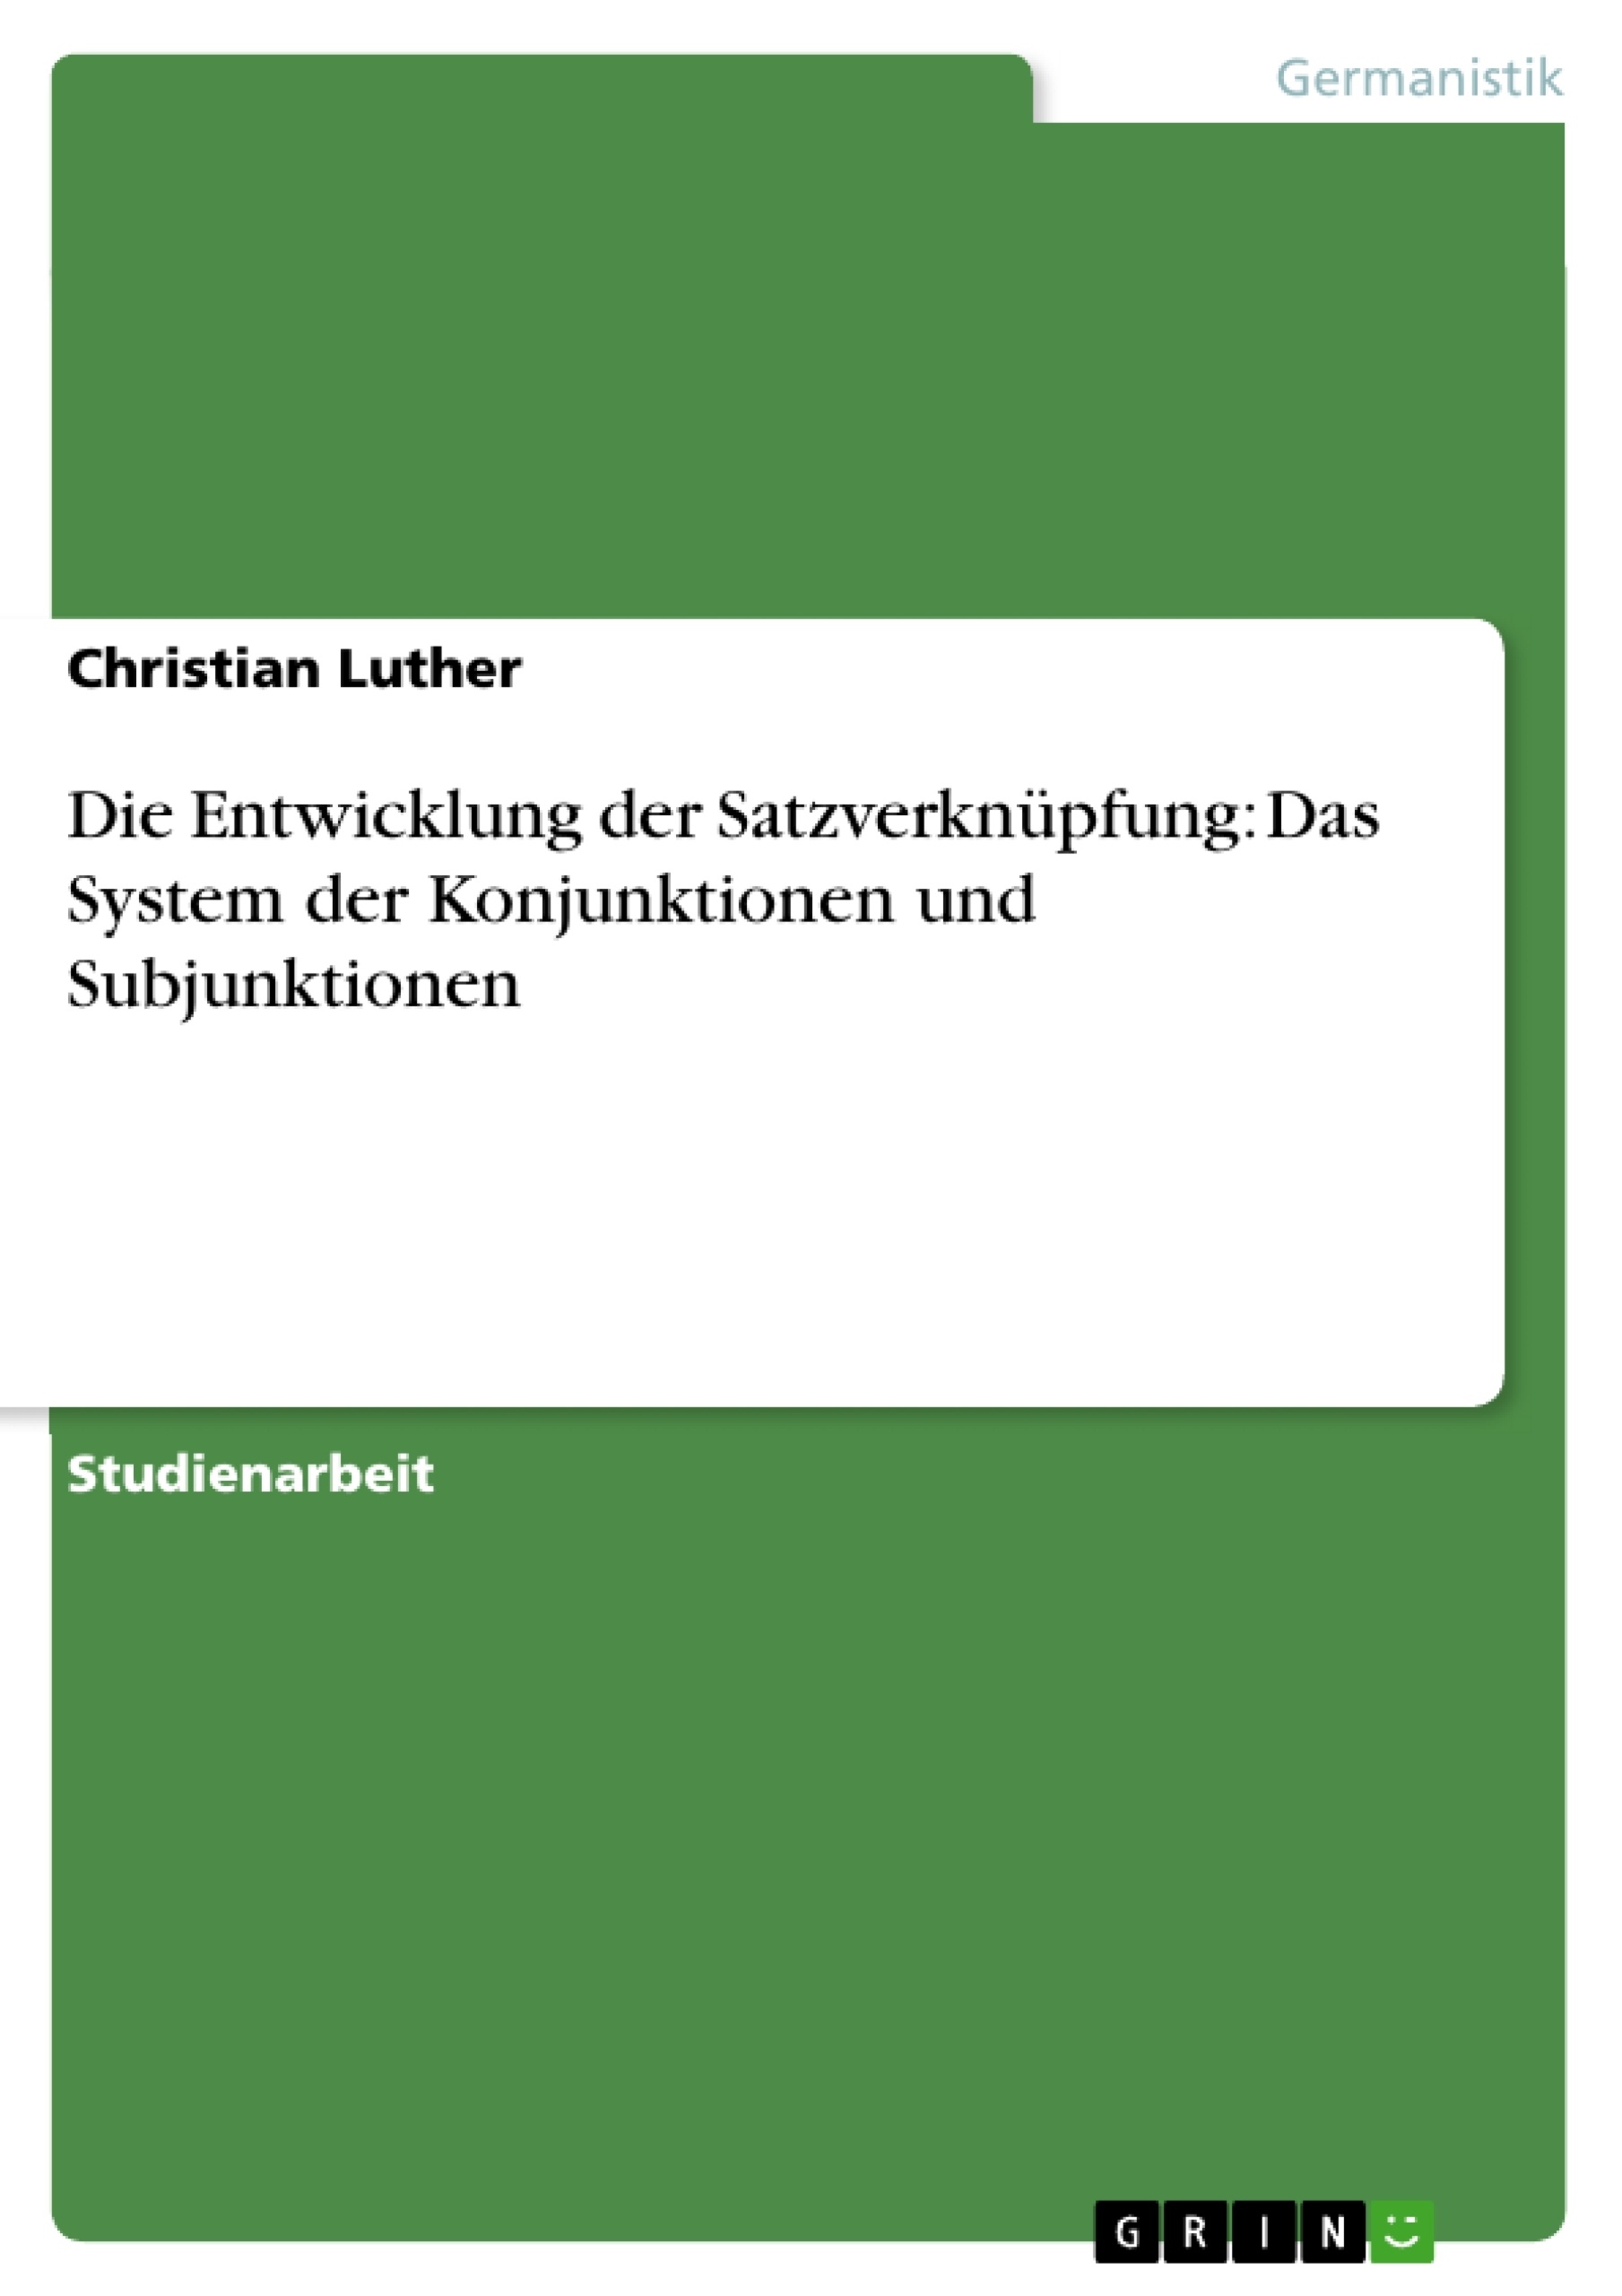 Title: Die Entwicklung der Satzverknüpfung: Das System der Konjunktionen und Subjunktionen